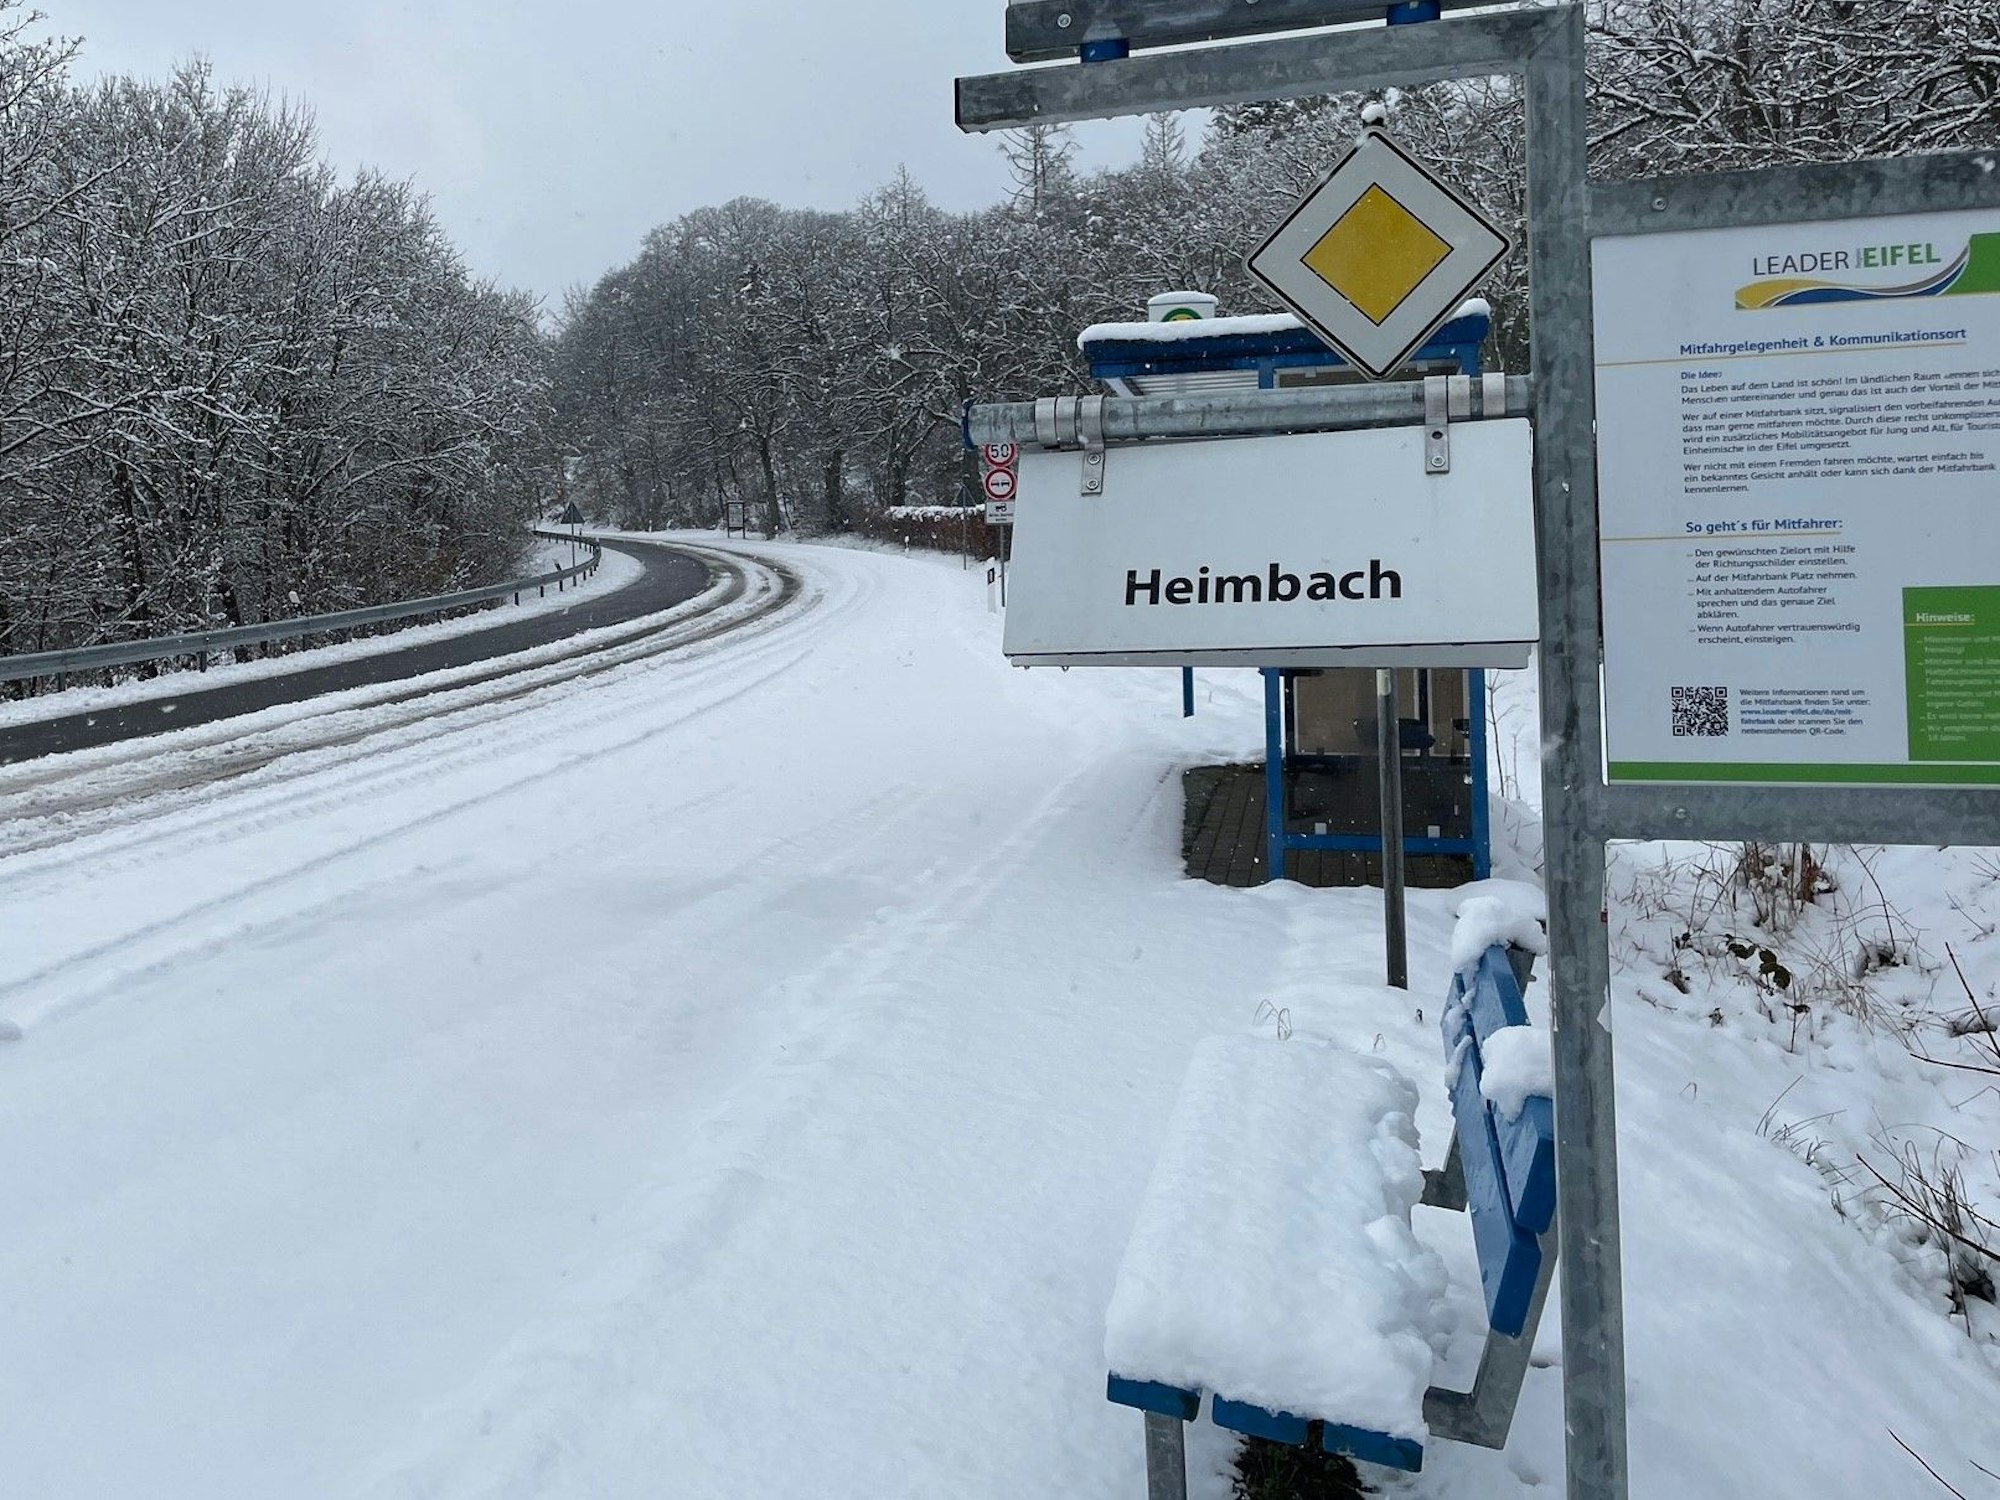 Eine Bank mit dem Hinweisschild "Heimbach" liegt unter einer Schneedecke.